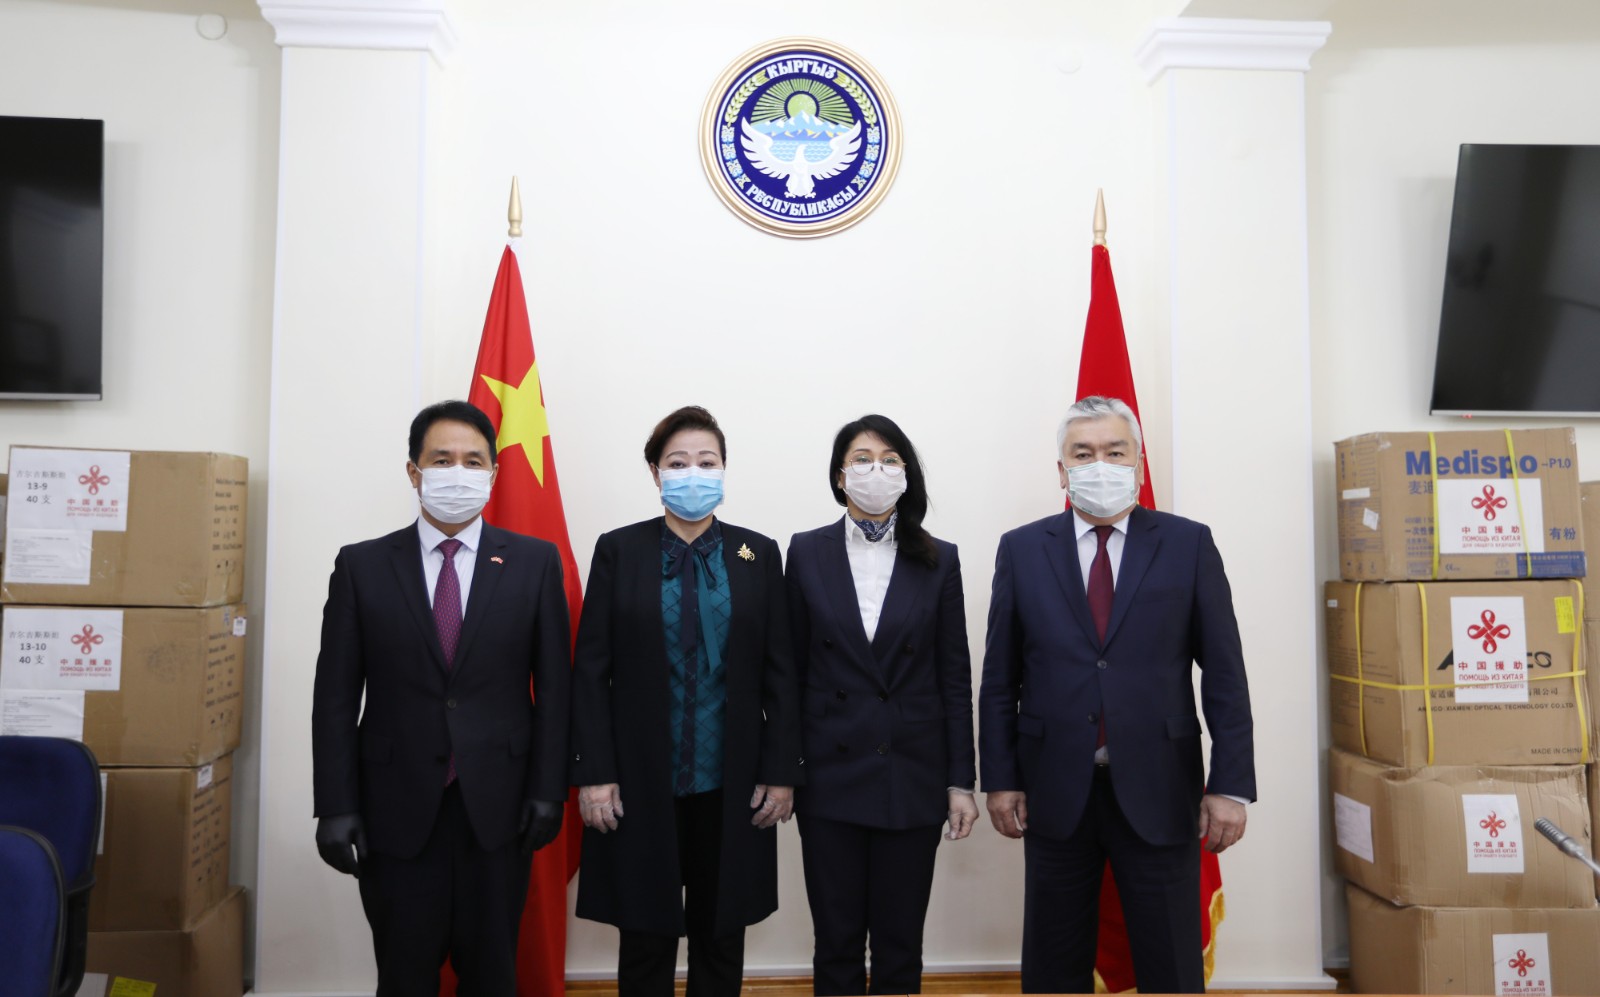 Посол Китая Ду Дэвэнь передала очередную партию гуманитарного груза Кыргызстану для борьбы с коронавирусом